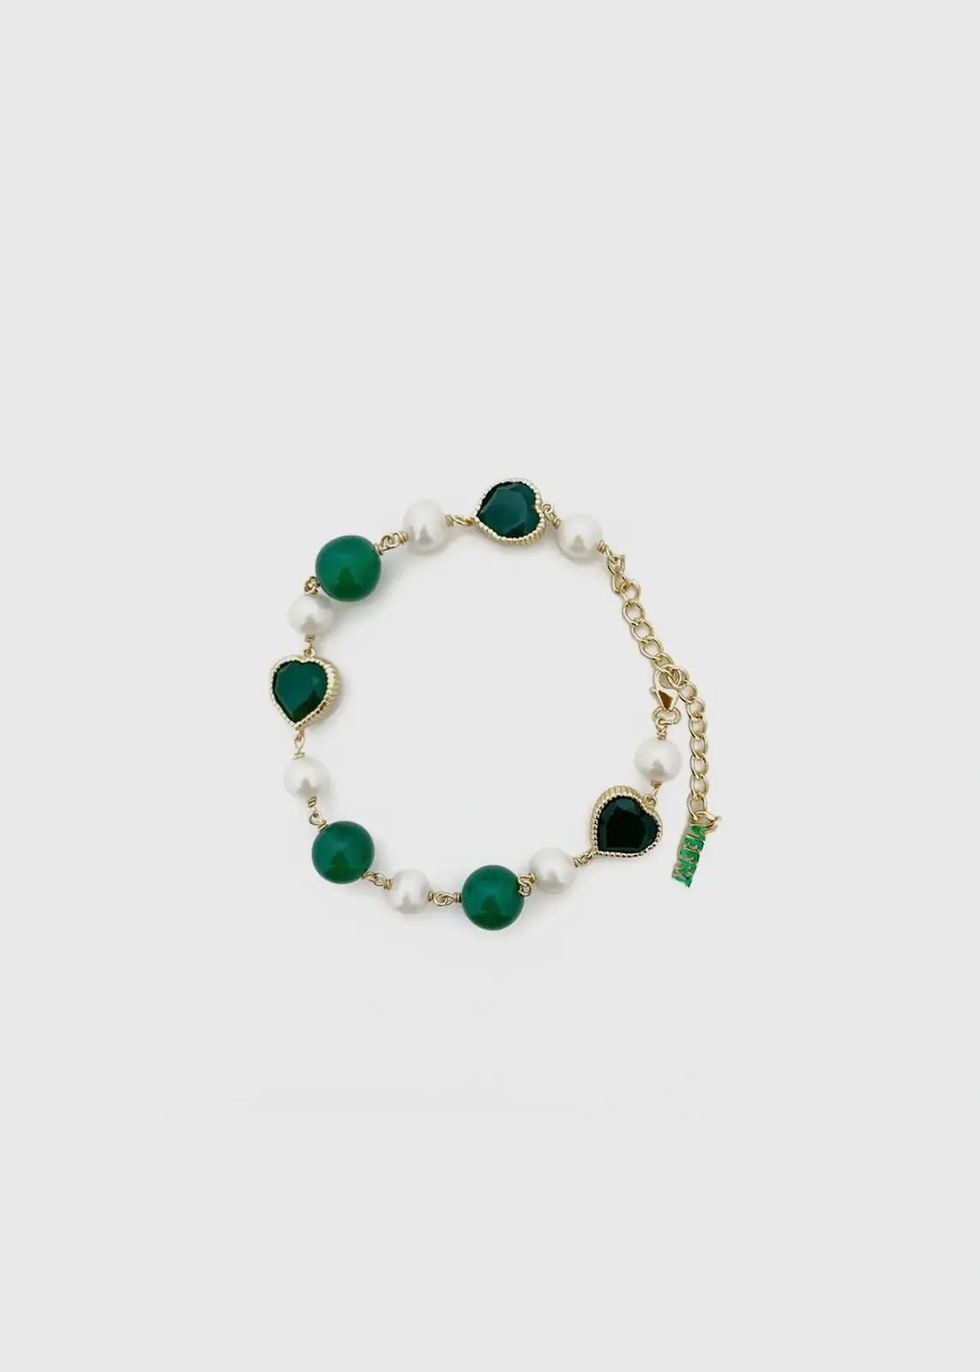 2023聖誕節「送男生」精品禮物推薦：綠瑪瑙淡水珍珠手環